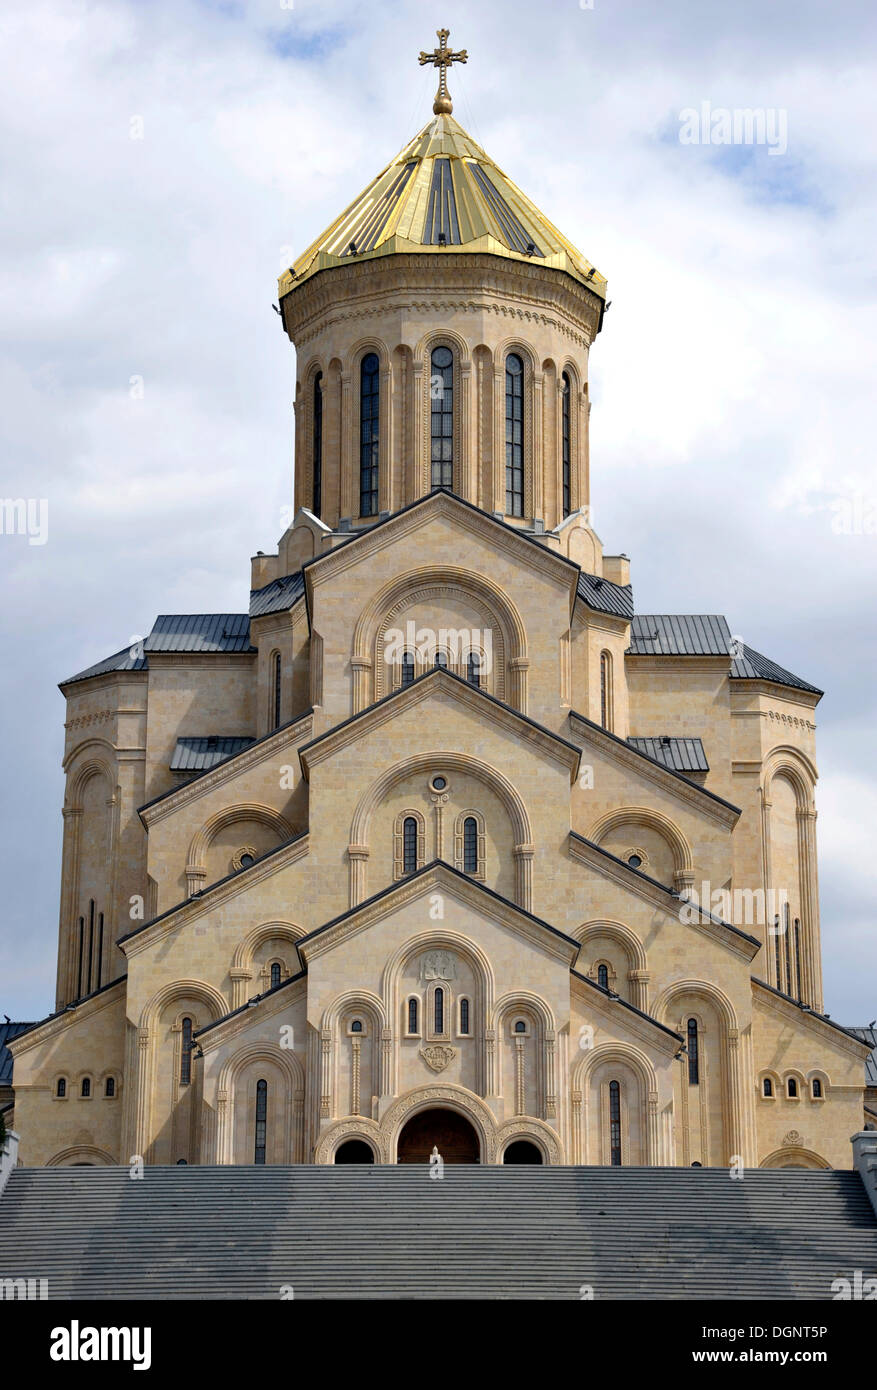 Cattedrale di Sameba o Trinità cattedrale, Avlabari distretto, Tbilisi, Georgia, Asia Occidentale Foto Stock